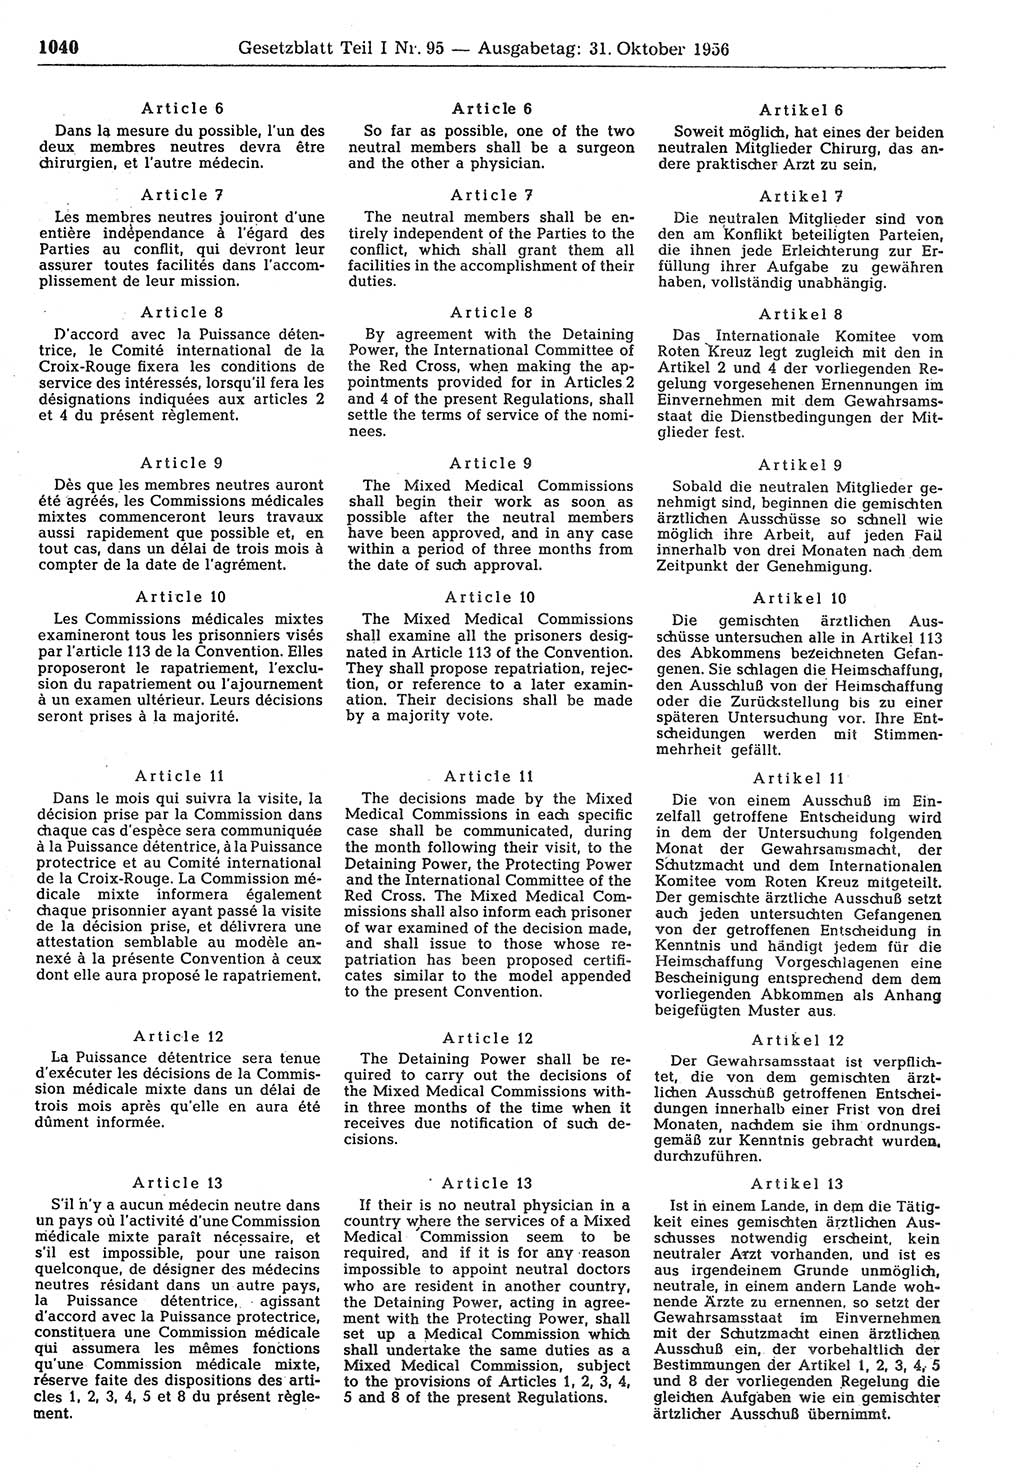 Gesetzblatt (GBl.) der Deutschen Demokratischen Republik (DDR) Teil Ⅰ 1956, Seite 1040 (GBl. DDR Ⅰ 1956, S. 1040)